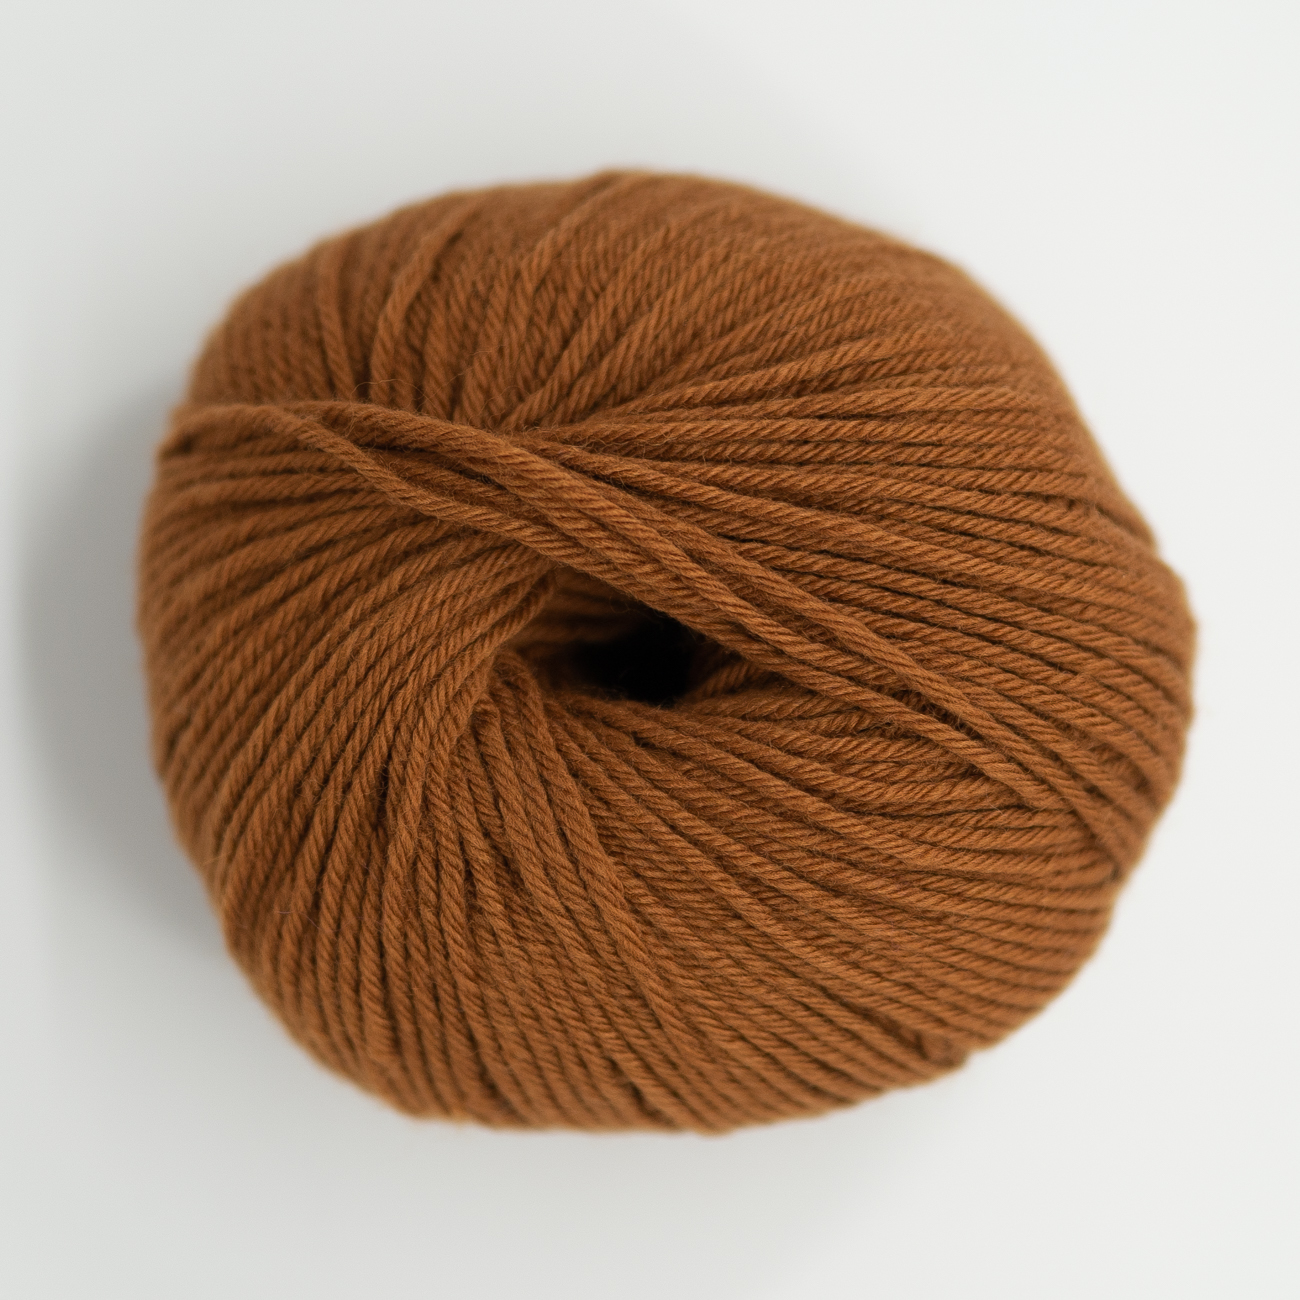  - Chocolate toffee | Pop merino | Merino wool yarn - by HipKnitShop - 26/09/2020